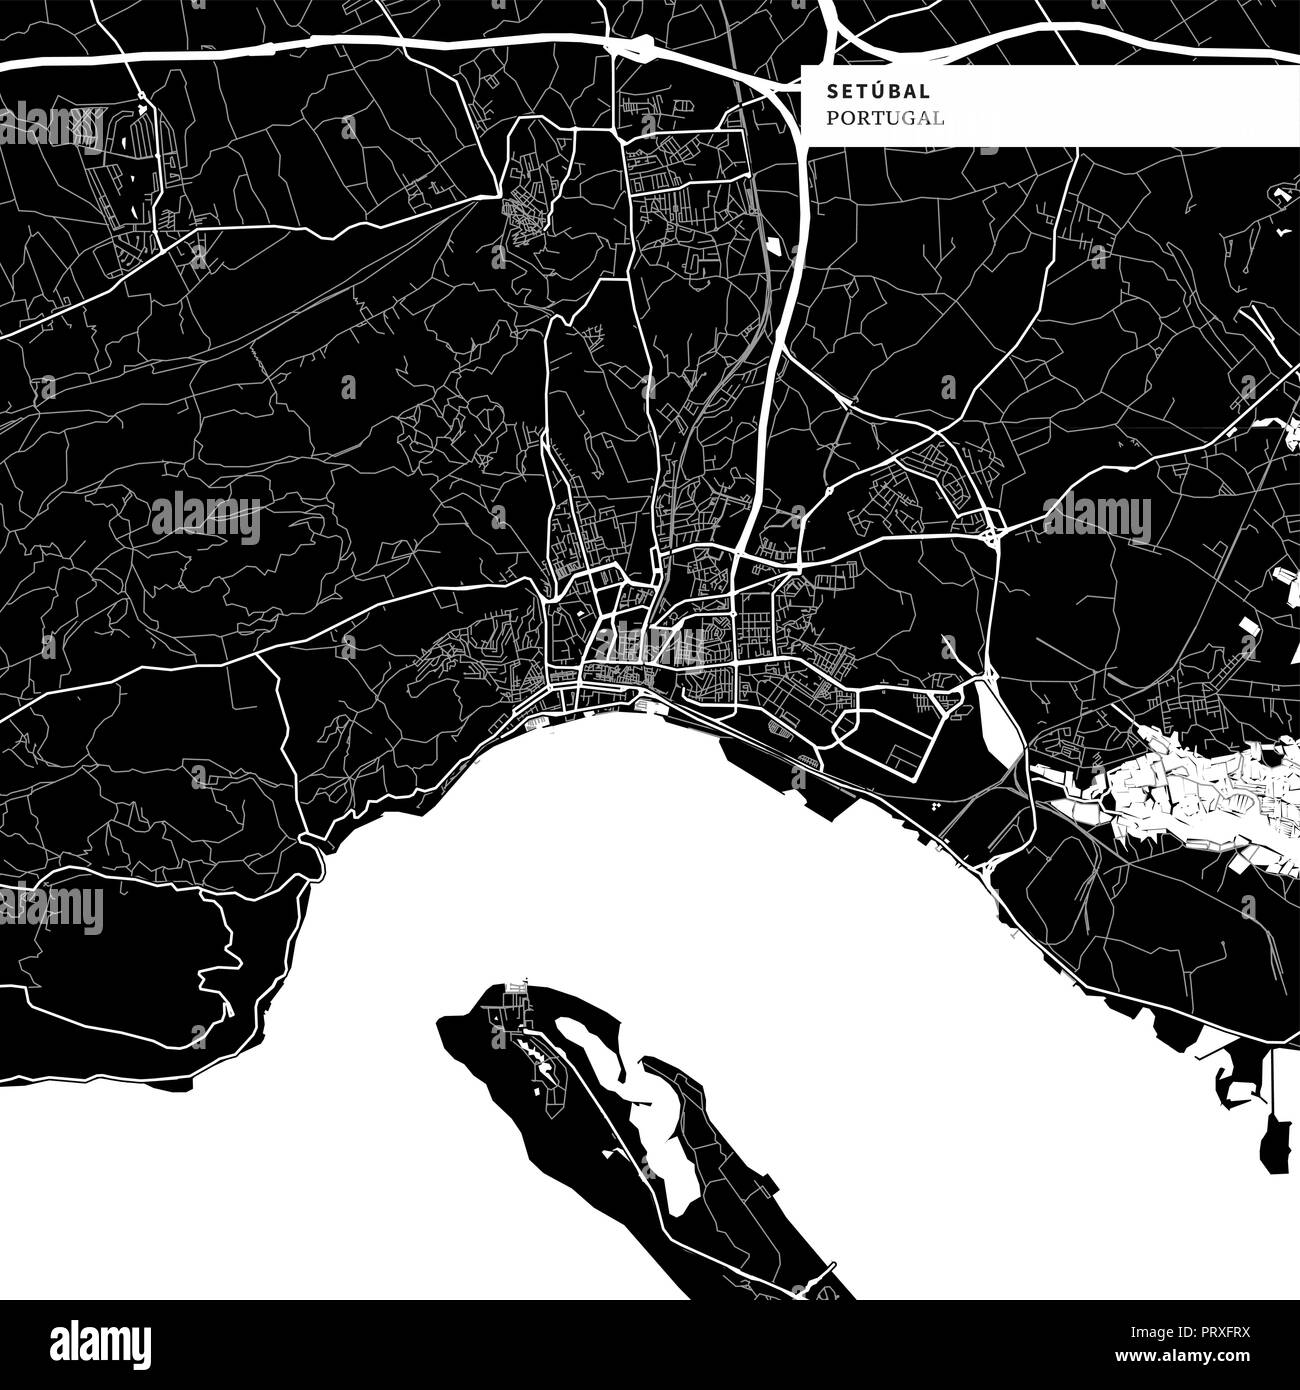 Carte de la région de Setubal, Portugal avec repères urbains typiques comme les bâtiments, les routes, les voies navigables et des chemins de fer ainsi que de plus petites routes et sentiers du parc. R Illustration de Vecteur